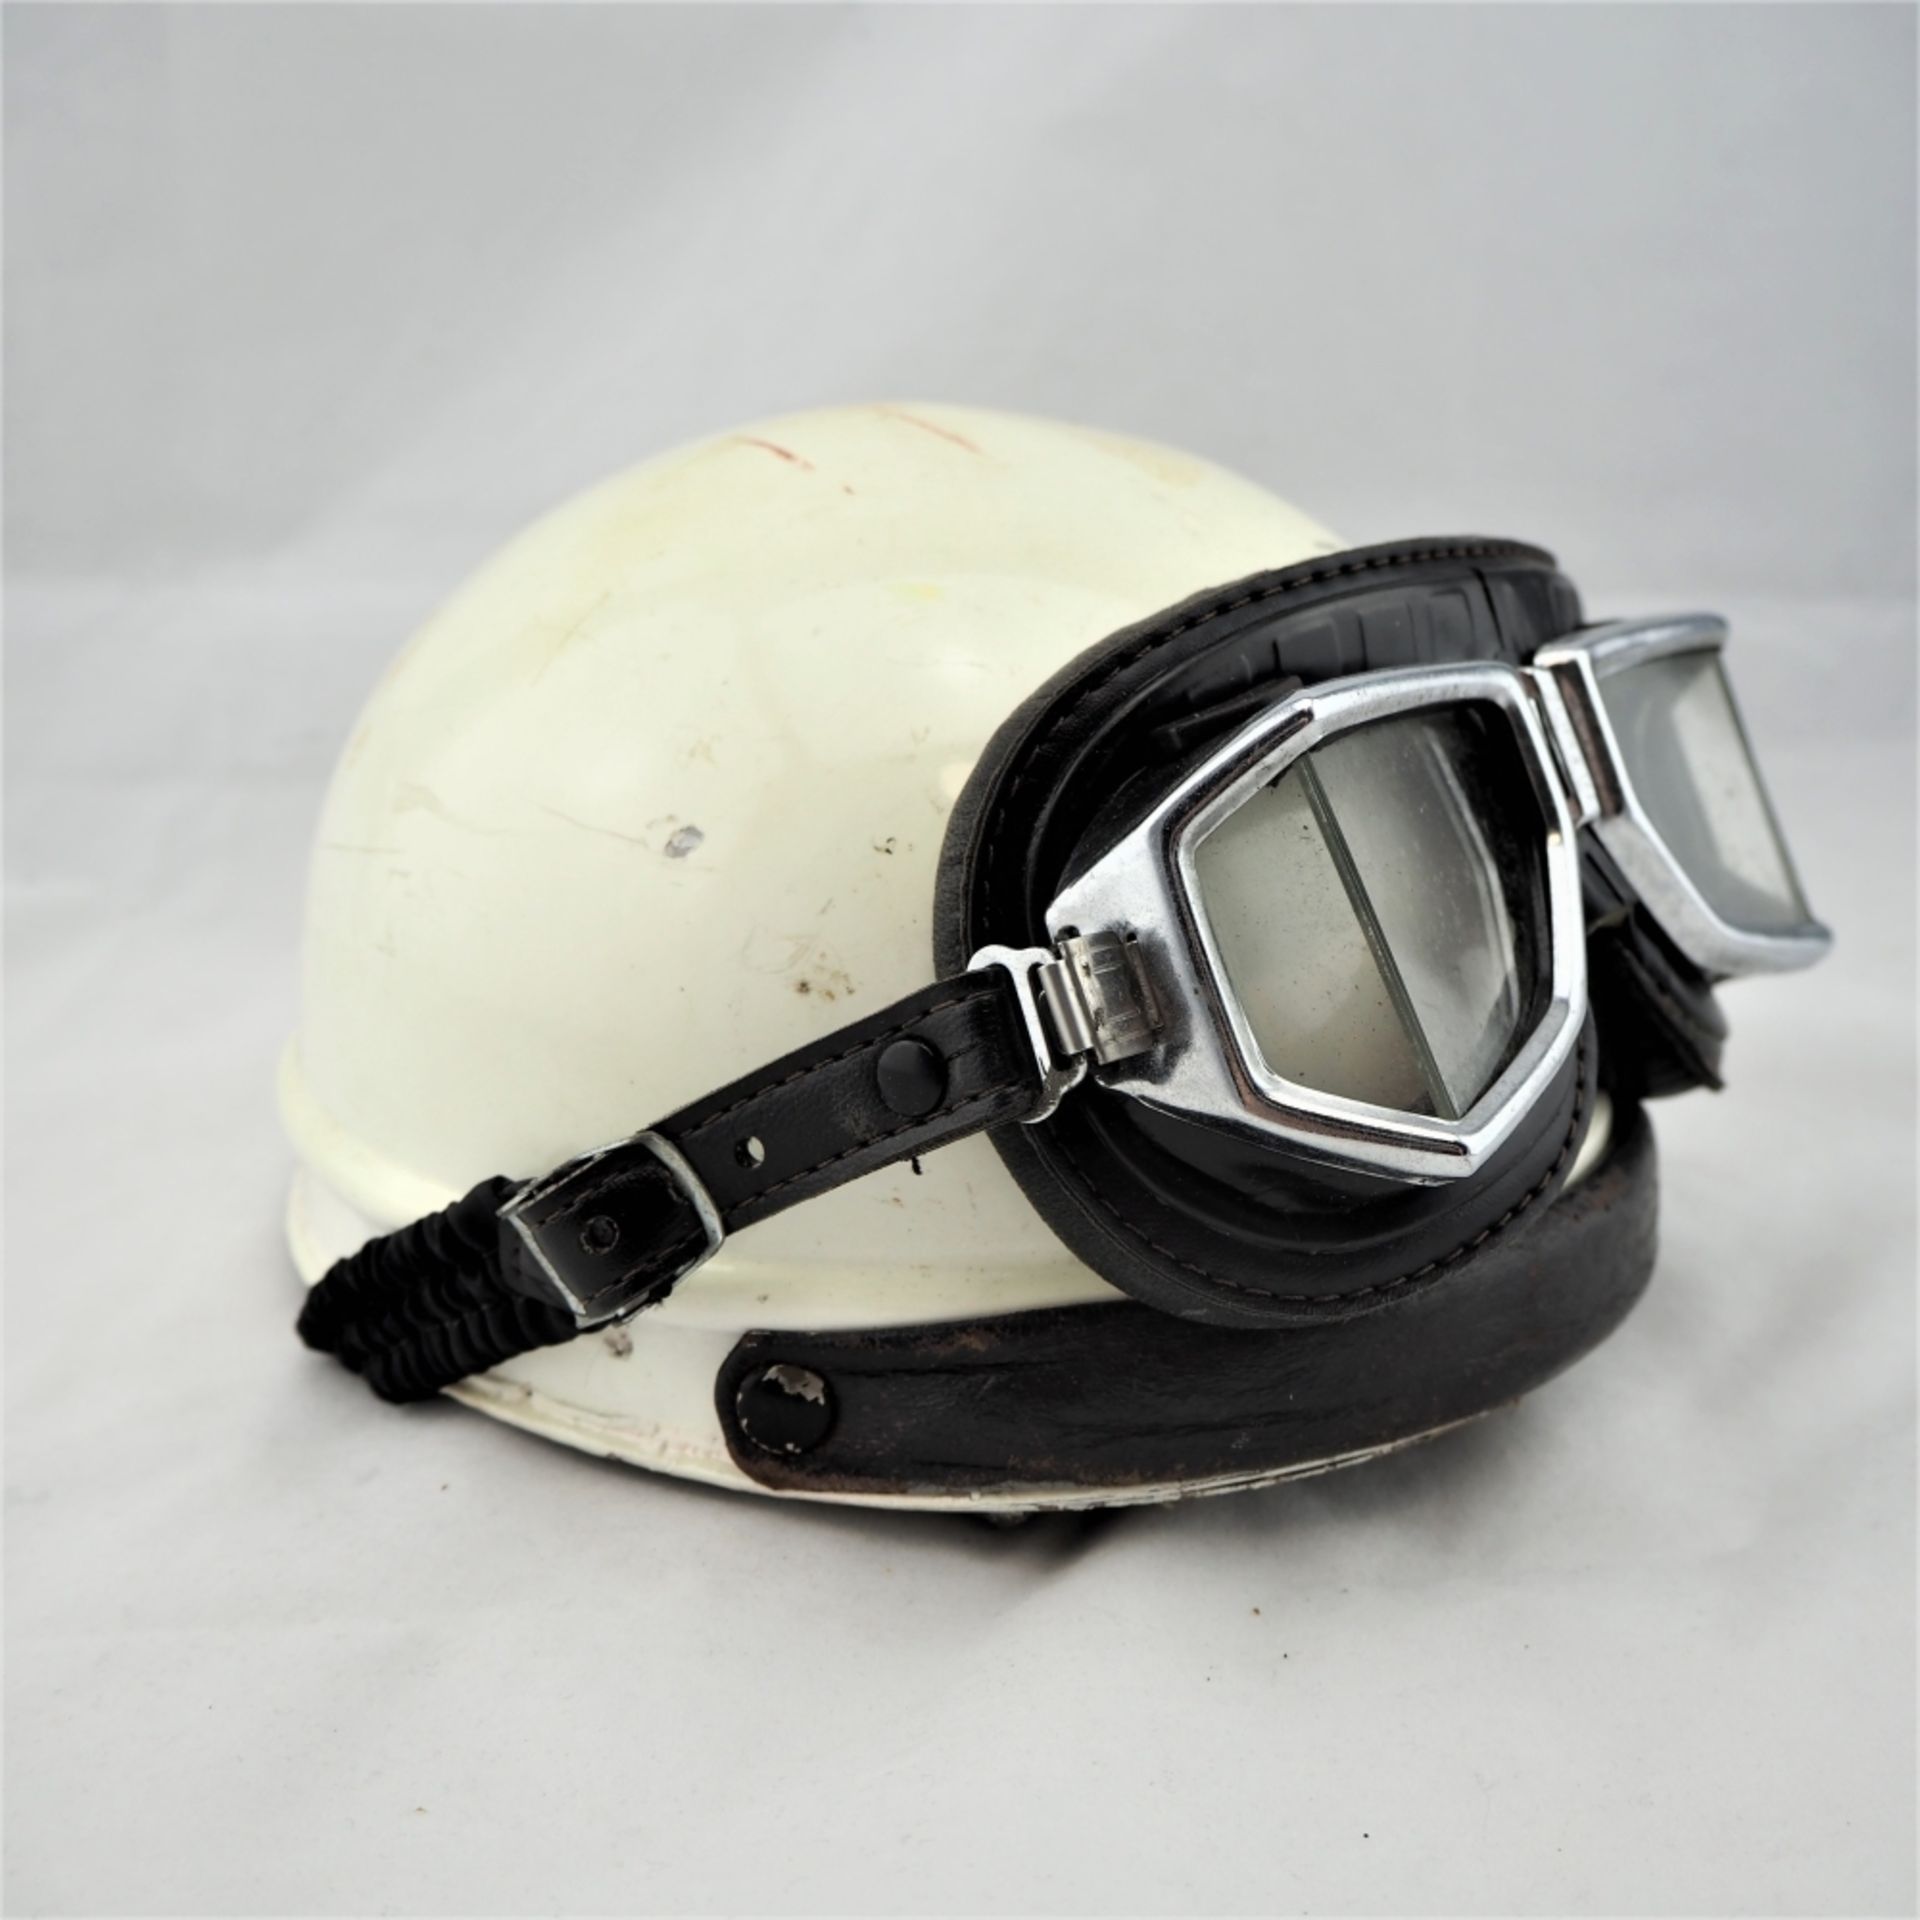 Motorrad-Helm, wohl 50er Jahre,Blech und Leder, mit Original-Brille. Gebraucht mit Spure - Bild 2 aus 4